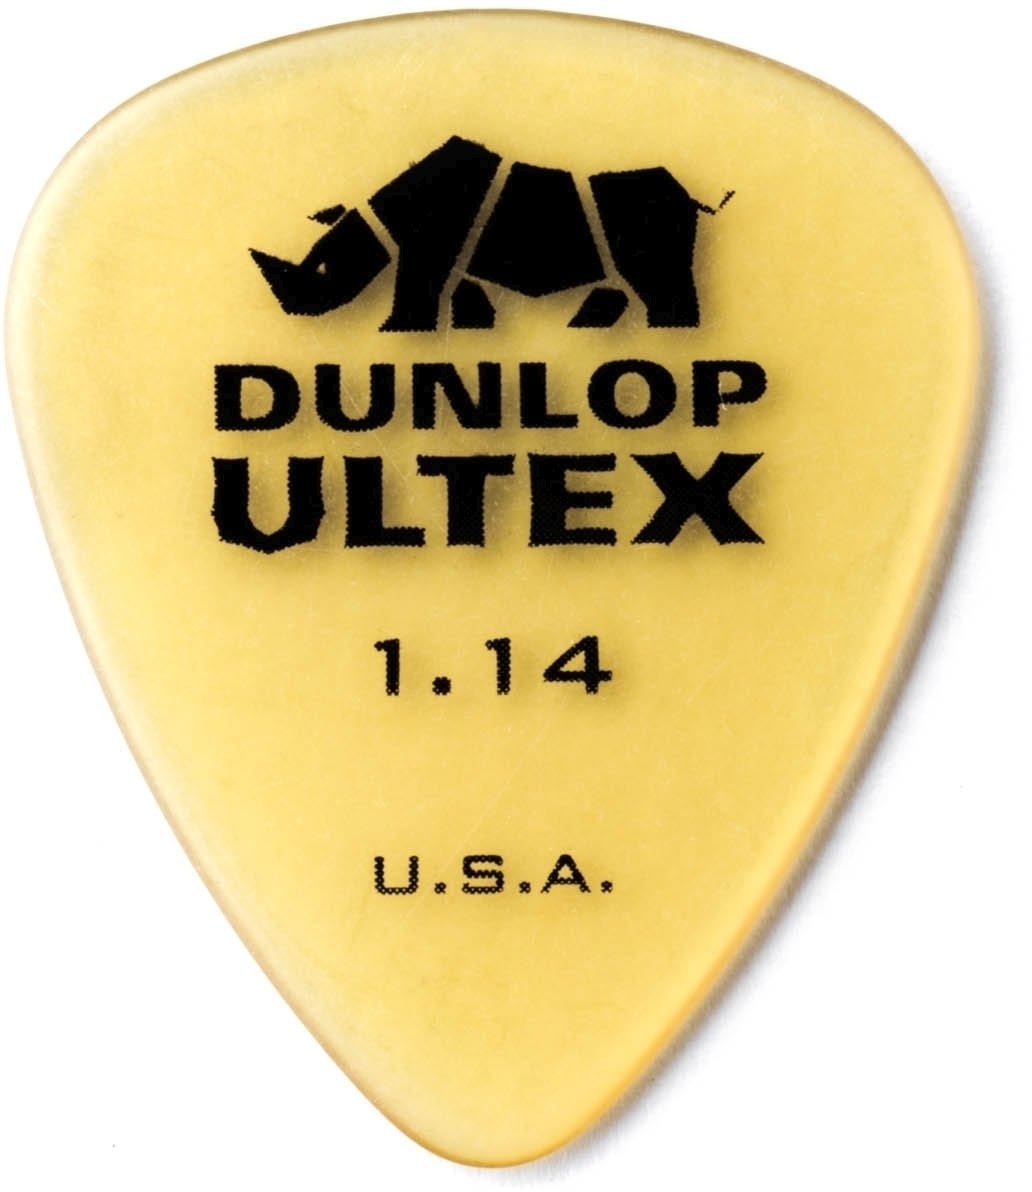 Palheta Dunlop 421R 1.14 Ultex Palheta